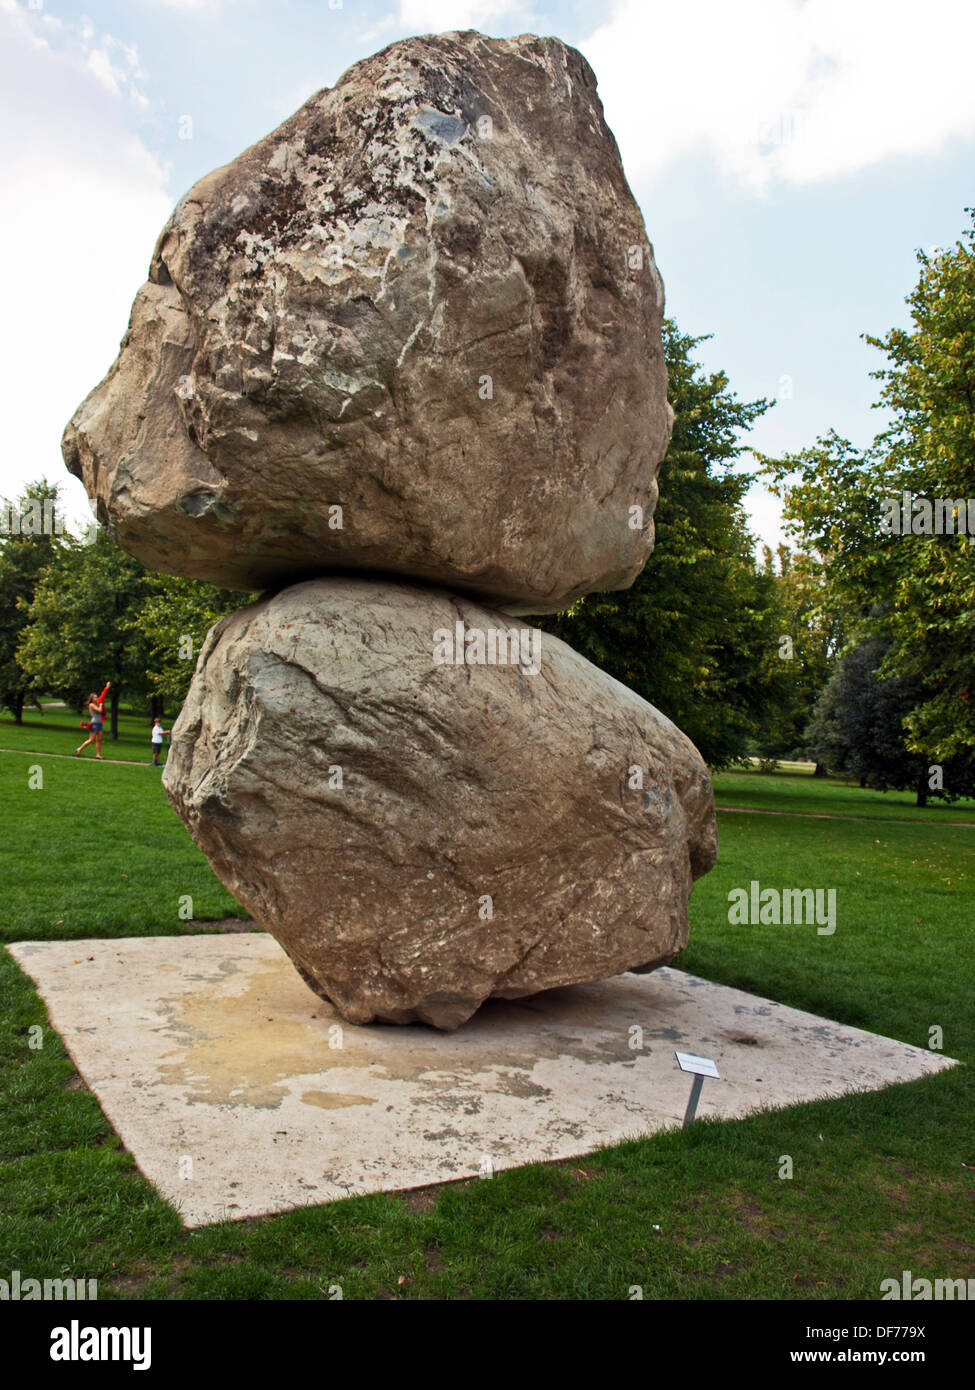 'Rock sulla parte superiore di un altro Rock' scultura di Fischli/Weiss presso la Serpentine Gallery, Kensington Gardens, Hyde Park Londra Foto Stock